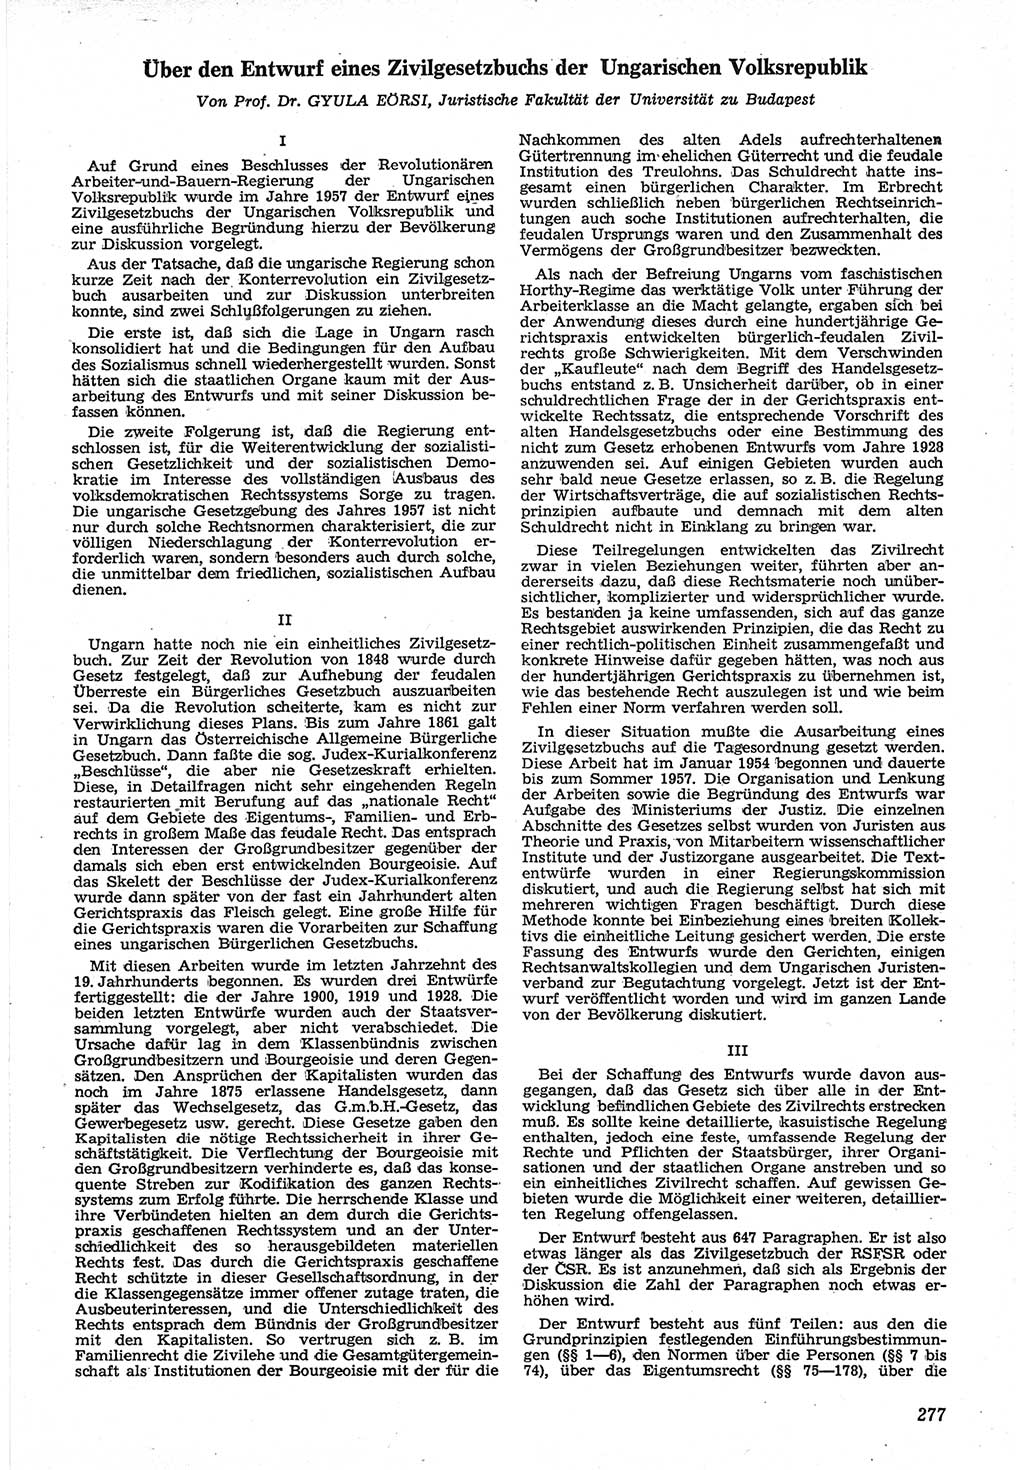 Neue Justiz (NJ), Zeitschrift für Recht und Rechtswissenschaft [Deutsche Demokratische Republik (DDR)], 12. Jahrgang 1958, Seite 277 (NJ DDR 1958, S. 277)